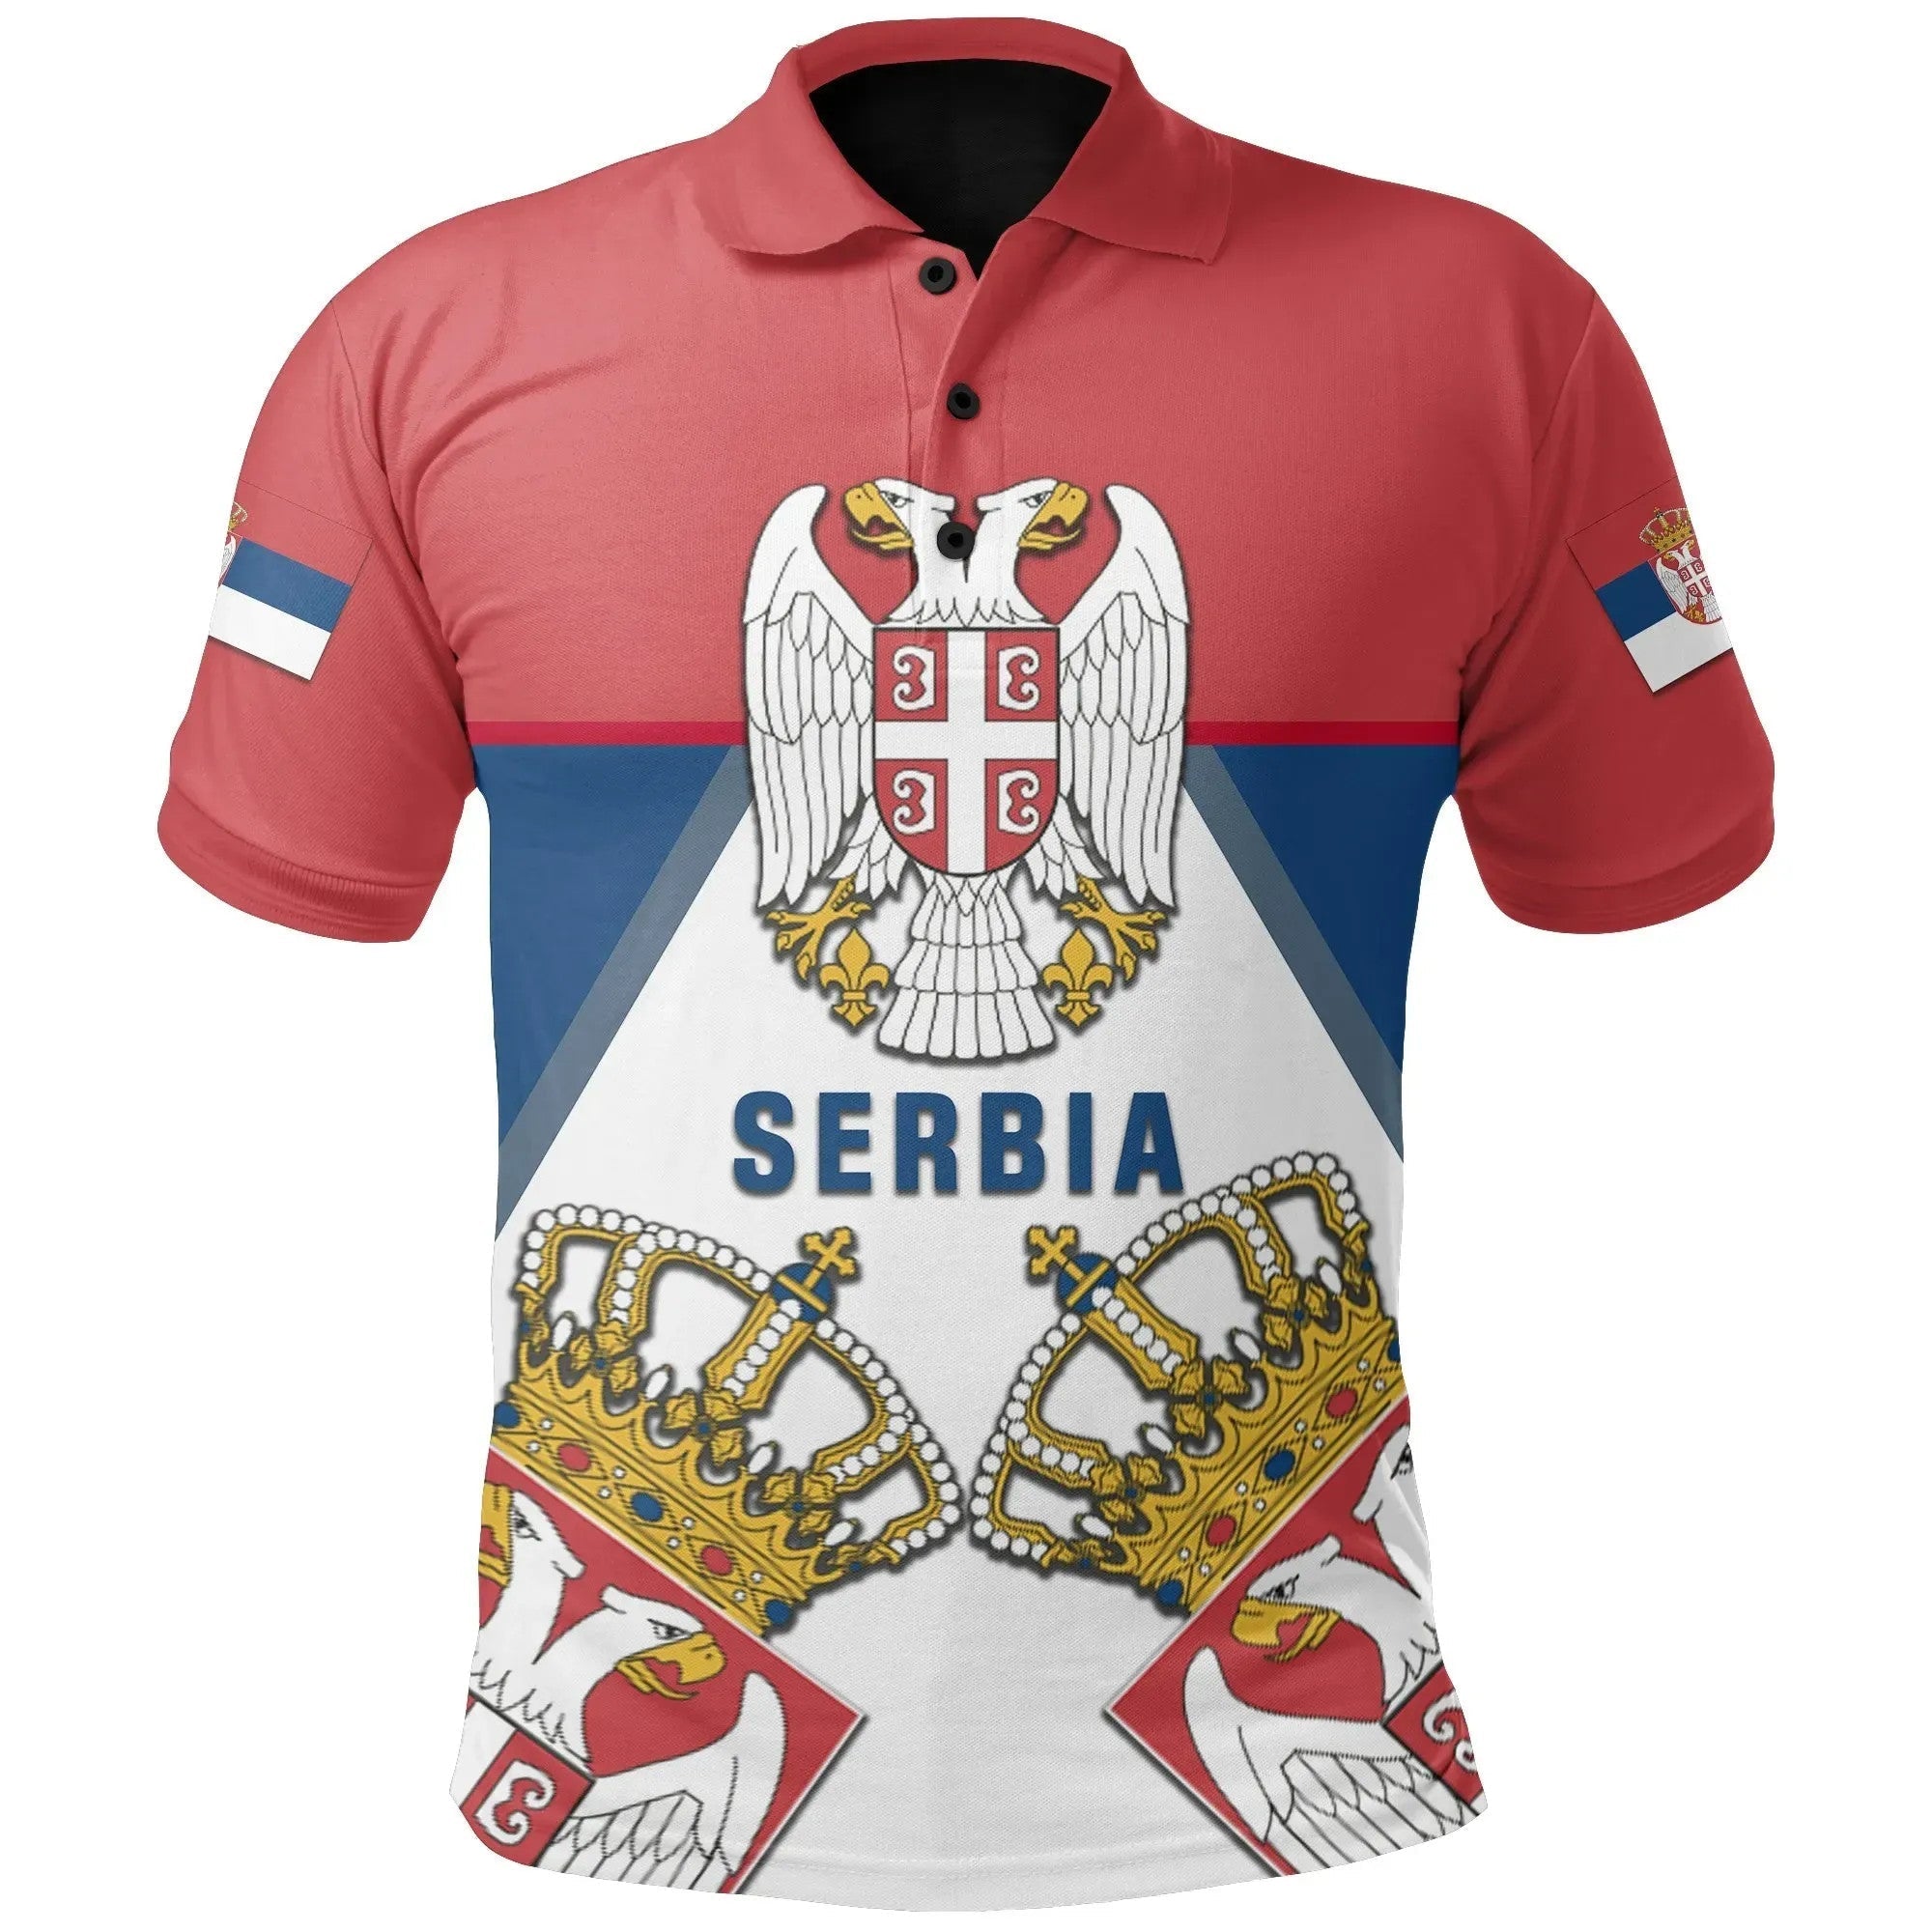 serbia-polo-shirt-serbia-white-eagle